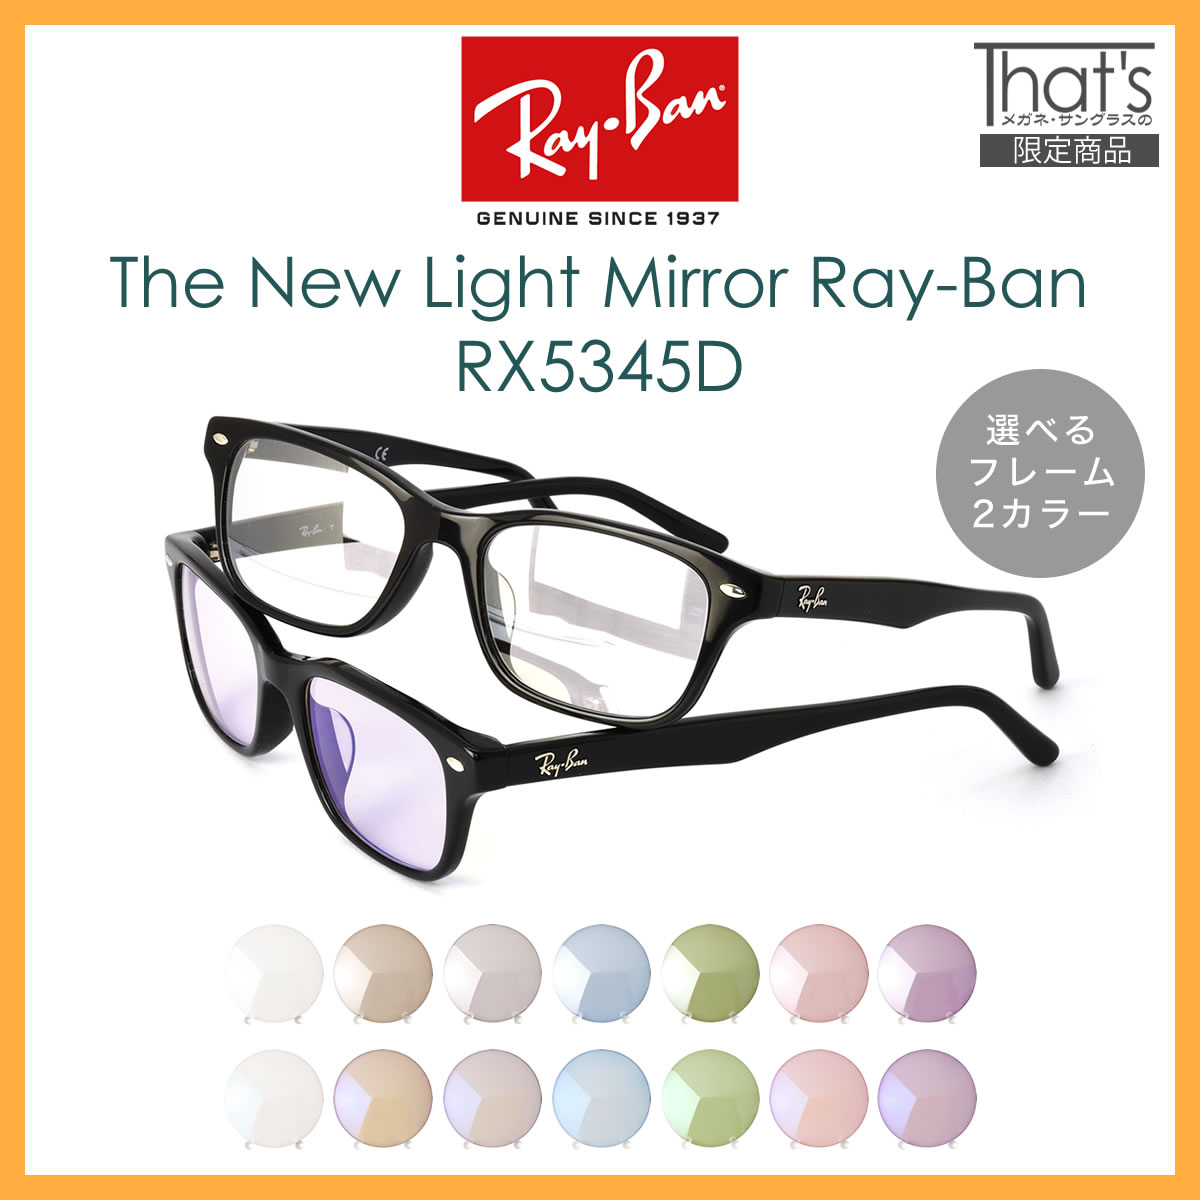 楽天市場 レイバン サングラス ライトミラー 眼鏡 Ray Ban Rx5345d Light Mirrors 53サイズ カラーミラー クリアミラー メガネ フレーム ブルーライトカット 黒縁 反射 芸能人御用達モデル メンズ レディース Os メガネ サングラスのthat S